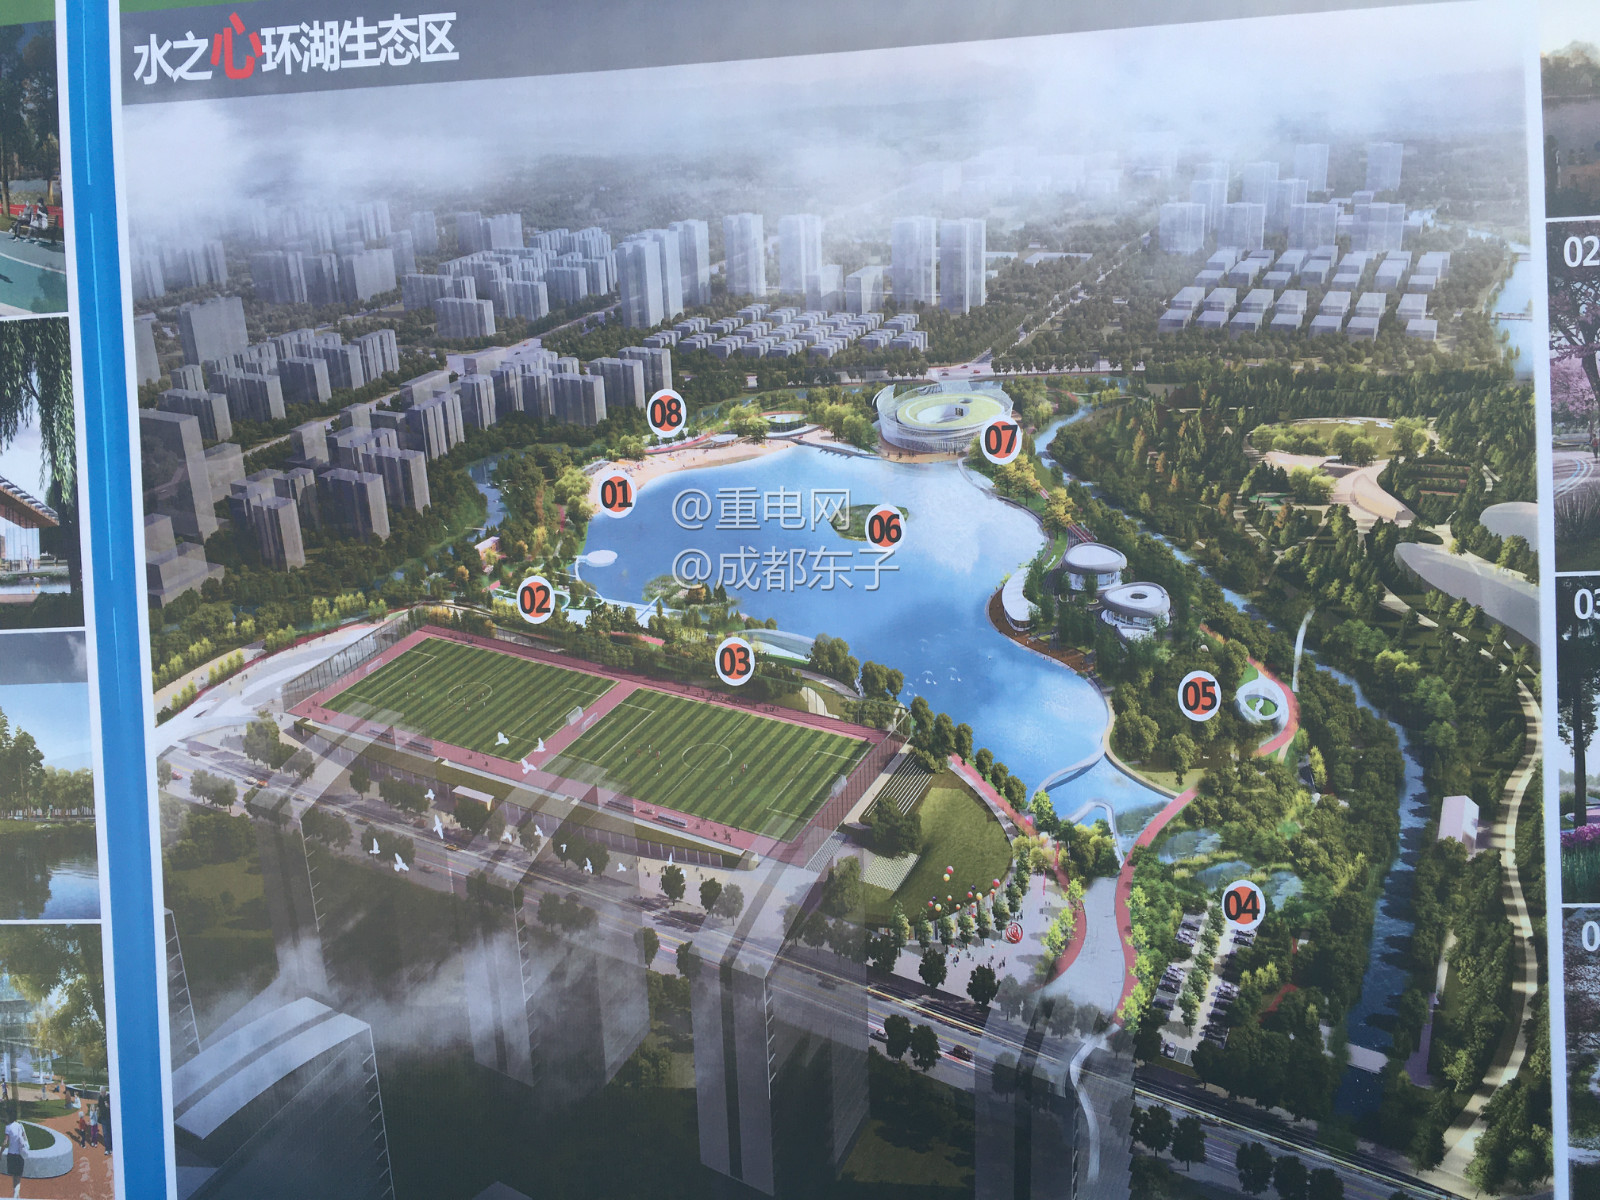 成都市北部新城凤凰山体育中心设计效果图首爆新建水主题公园